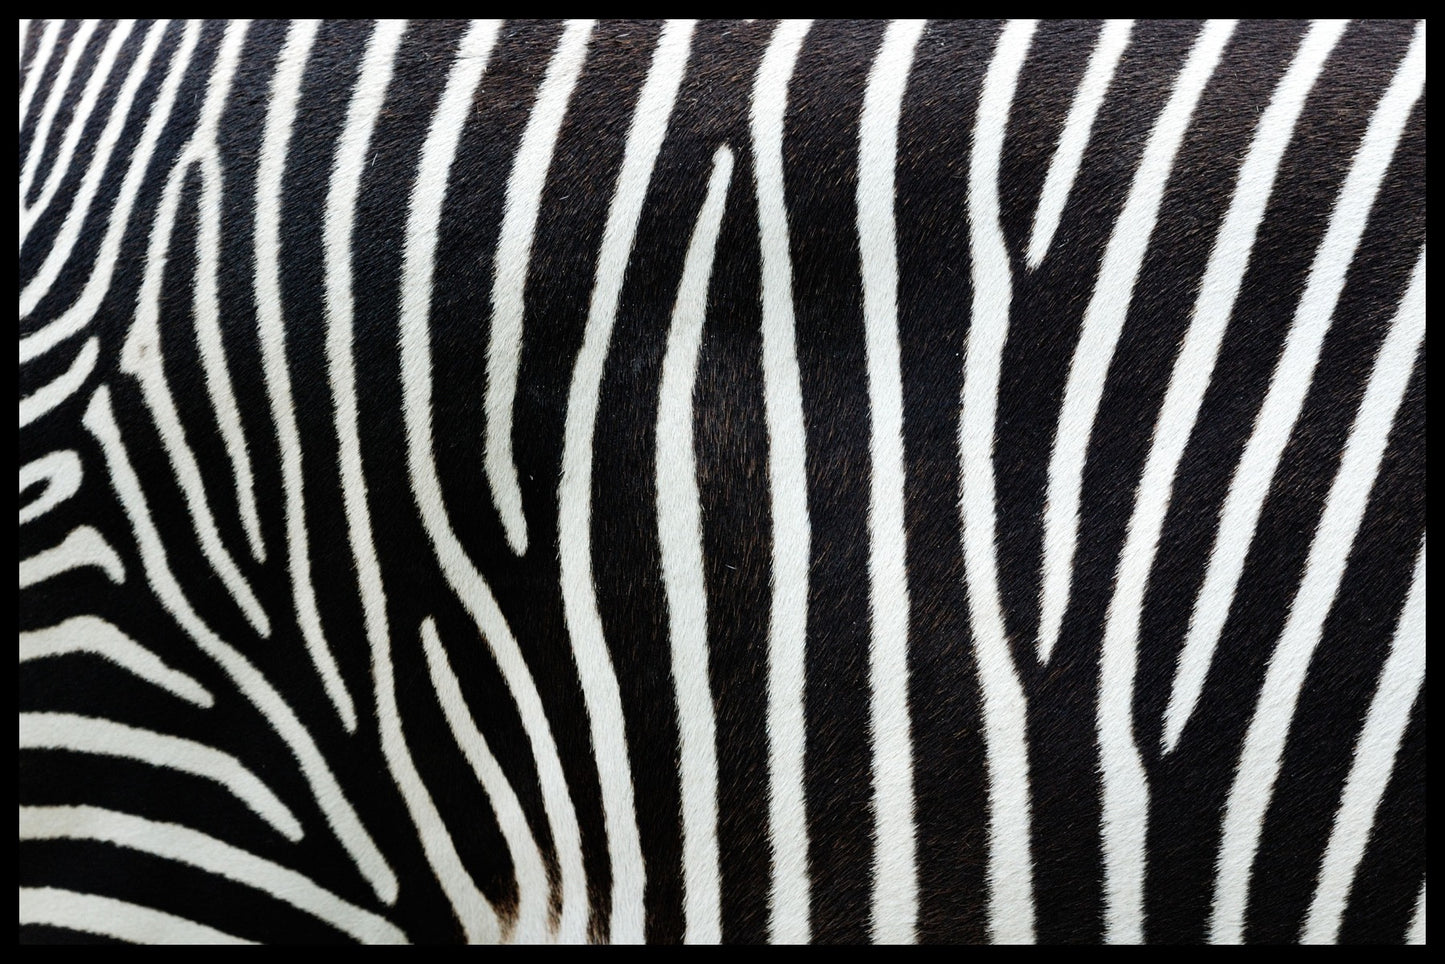  plakater med zebrastriber